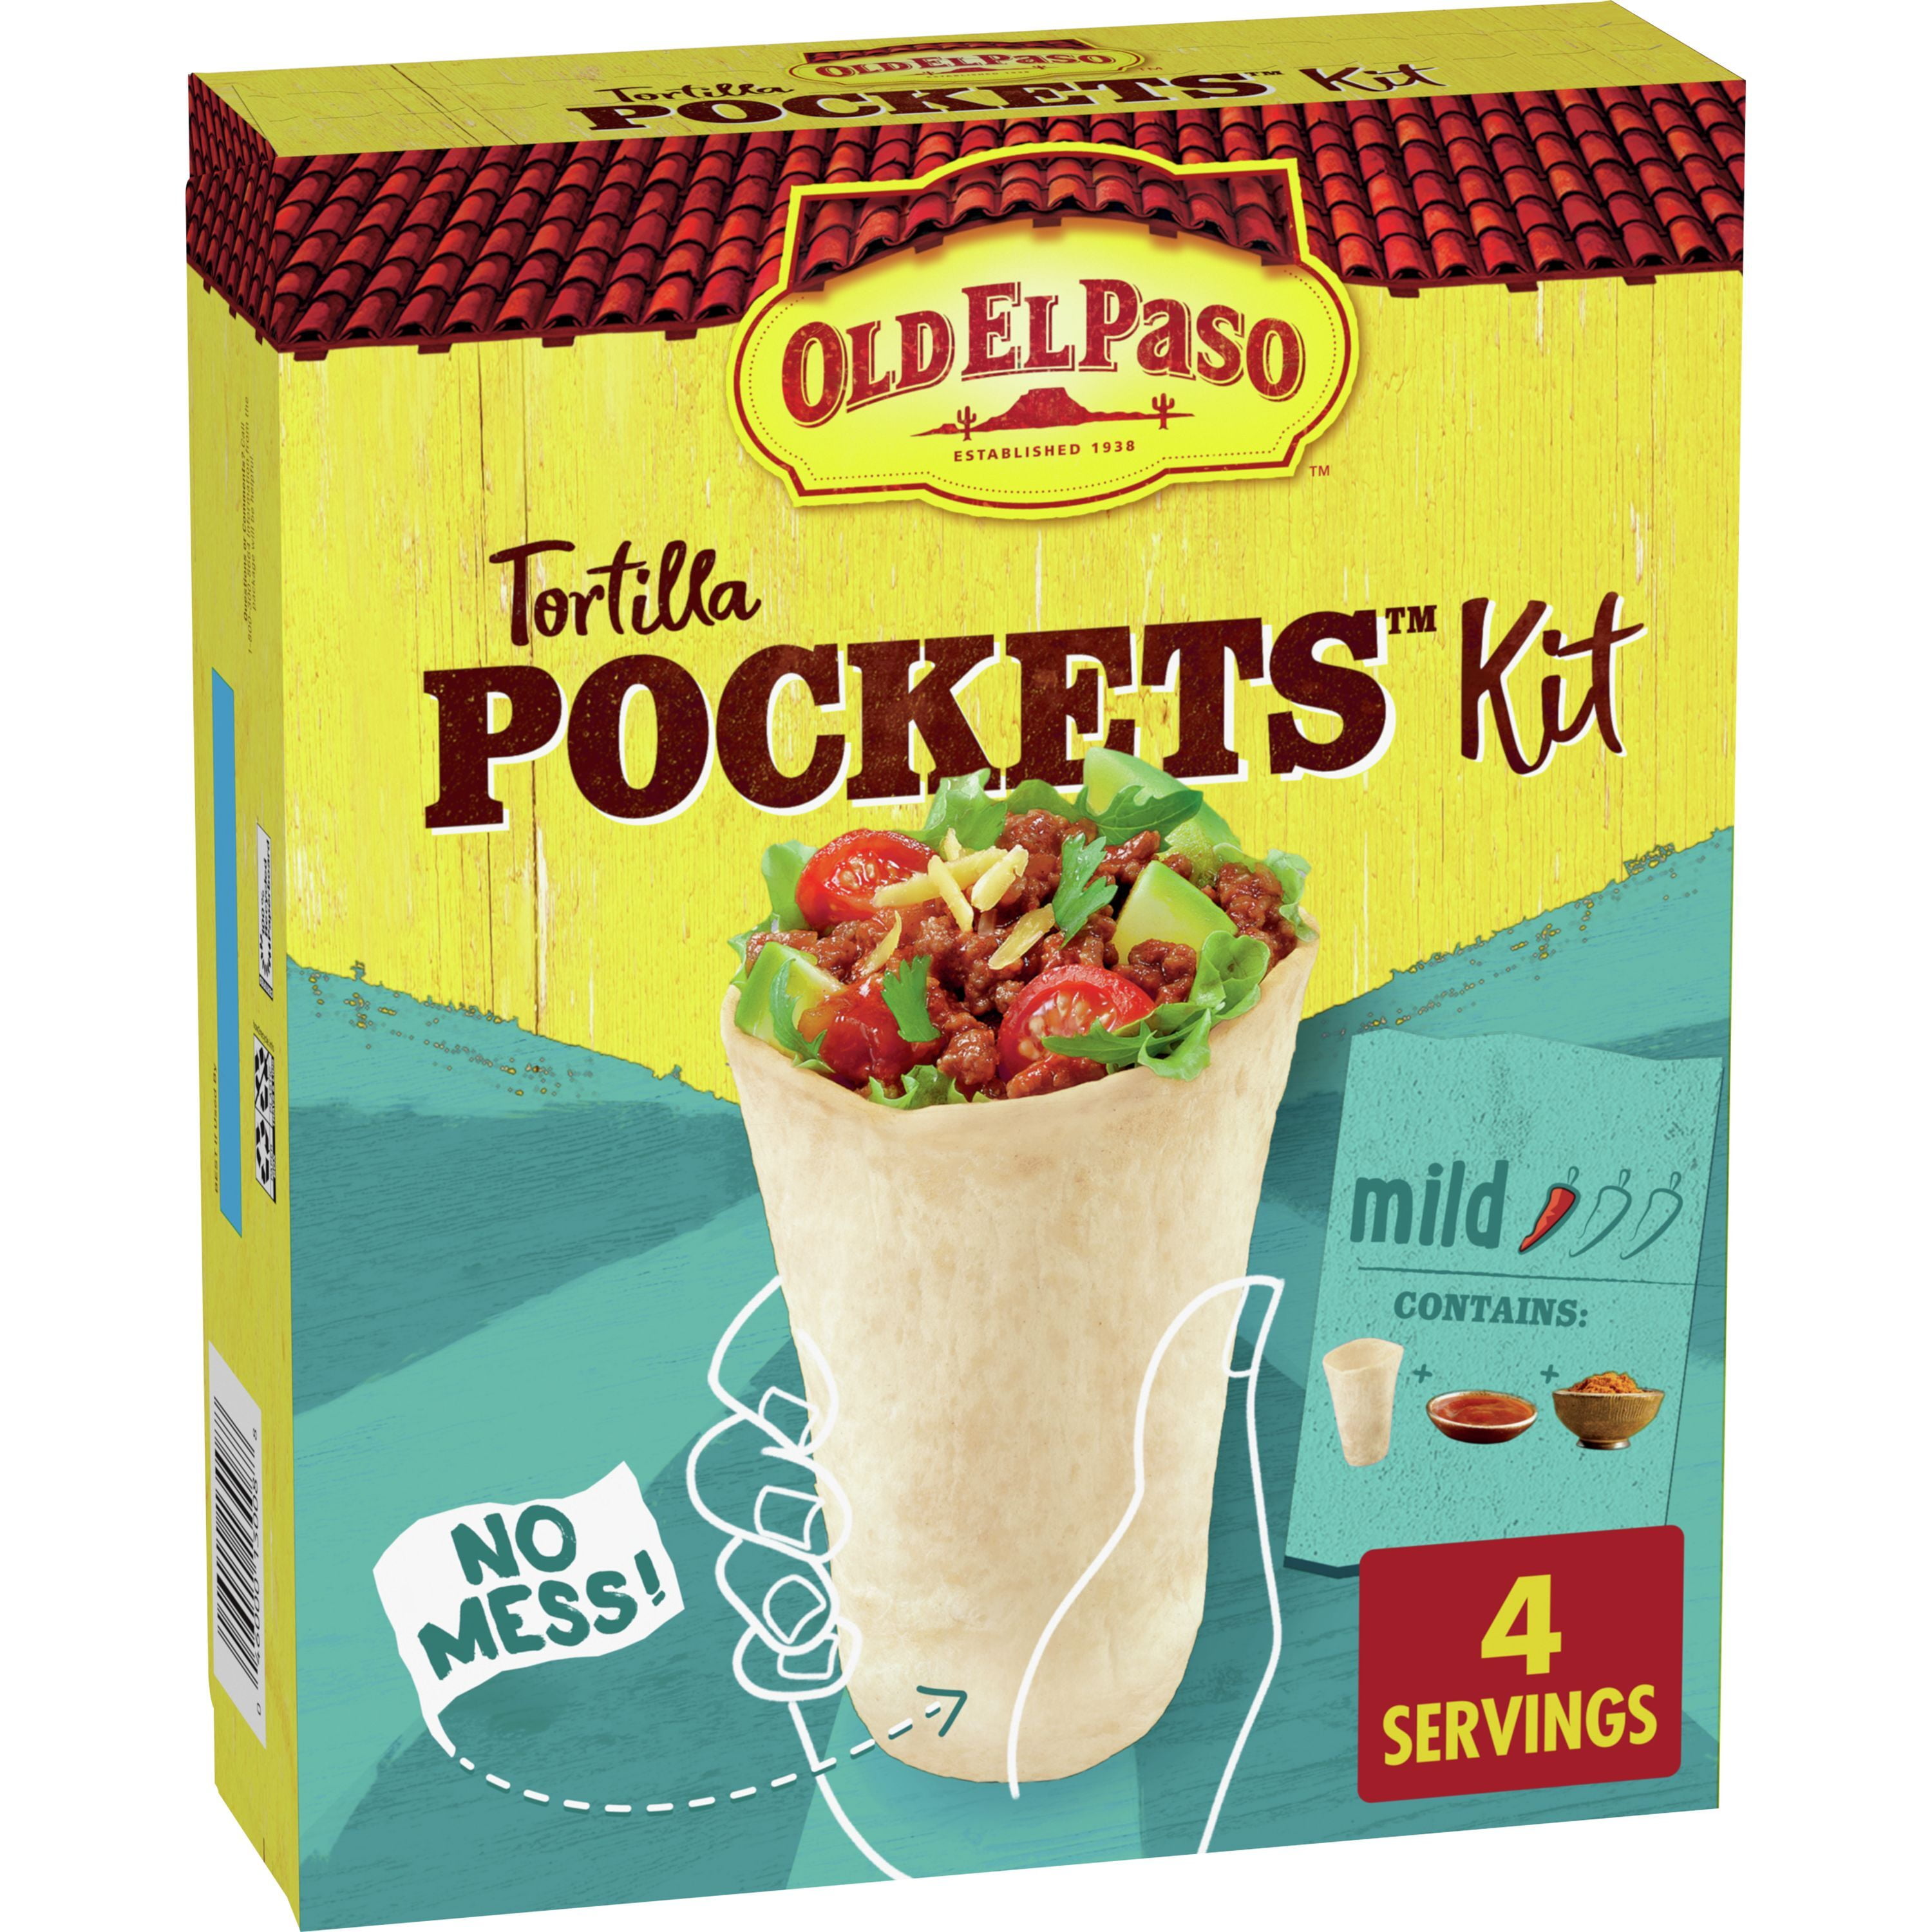 Old El Paso Tortilla Pockets Dinner Kit, 12.4 oz 